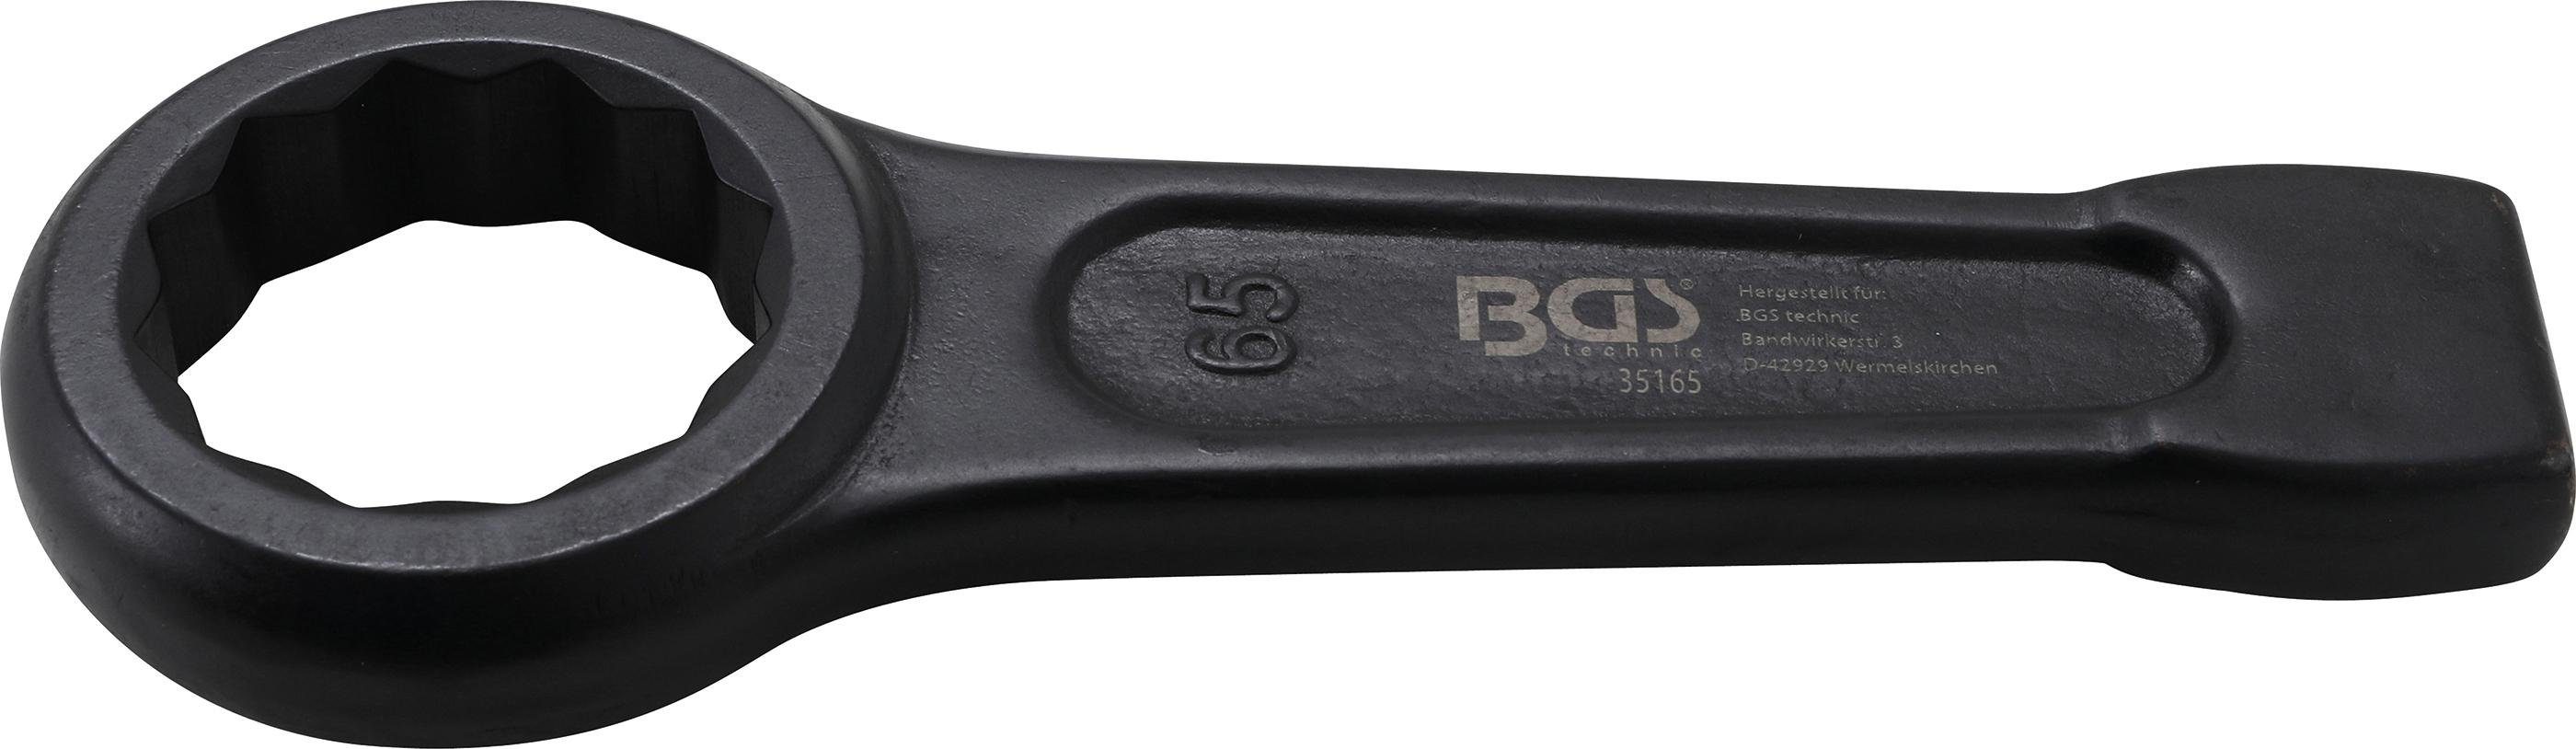 BGS technic Ringschlüssel Schlag-Ringschlüssel, SW 65 mm